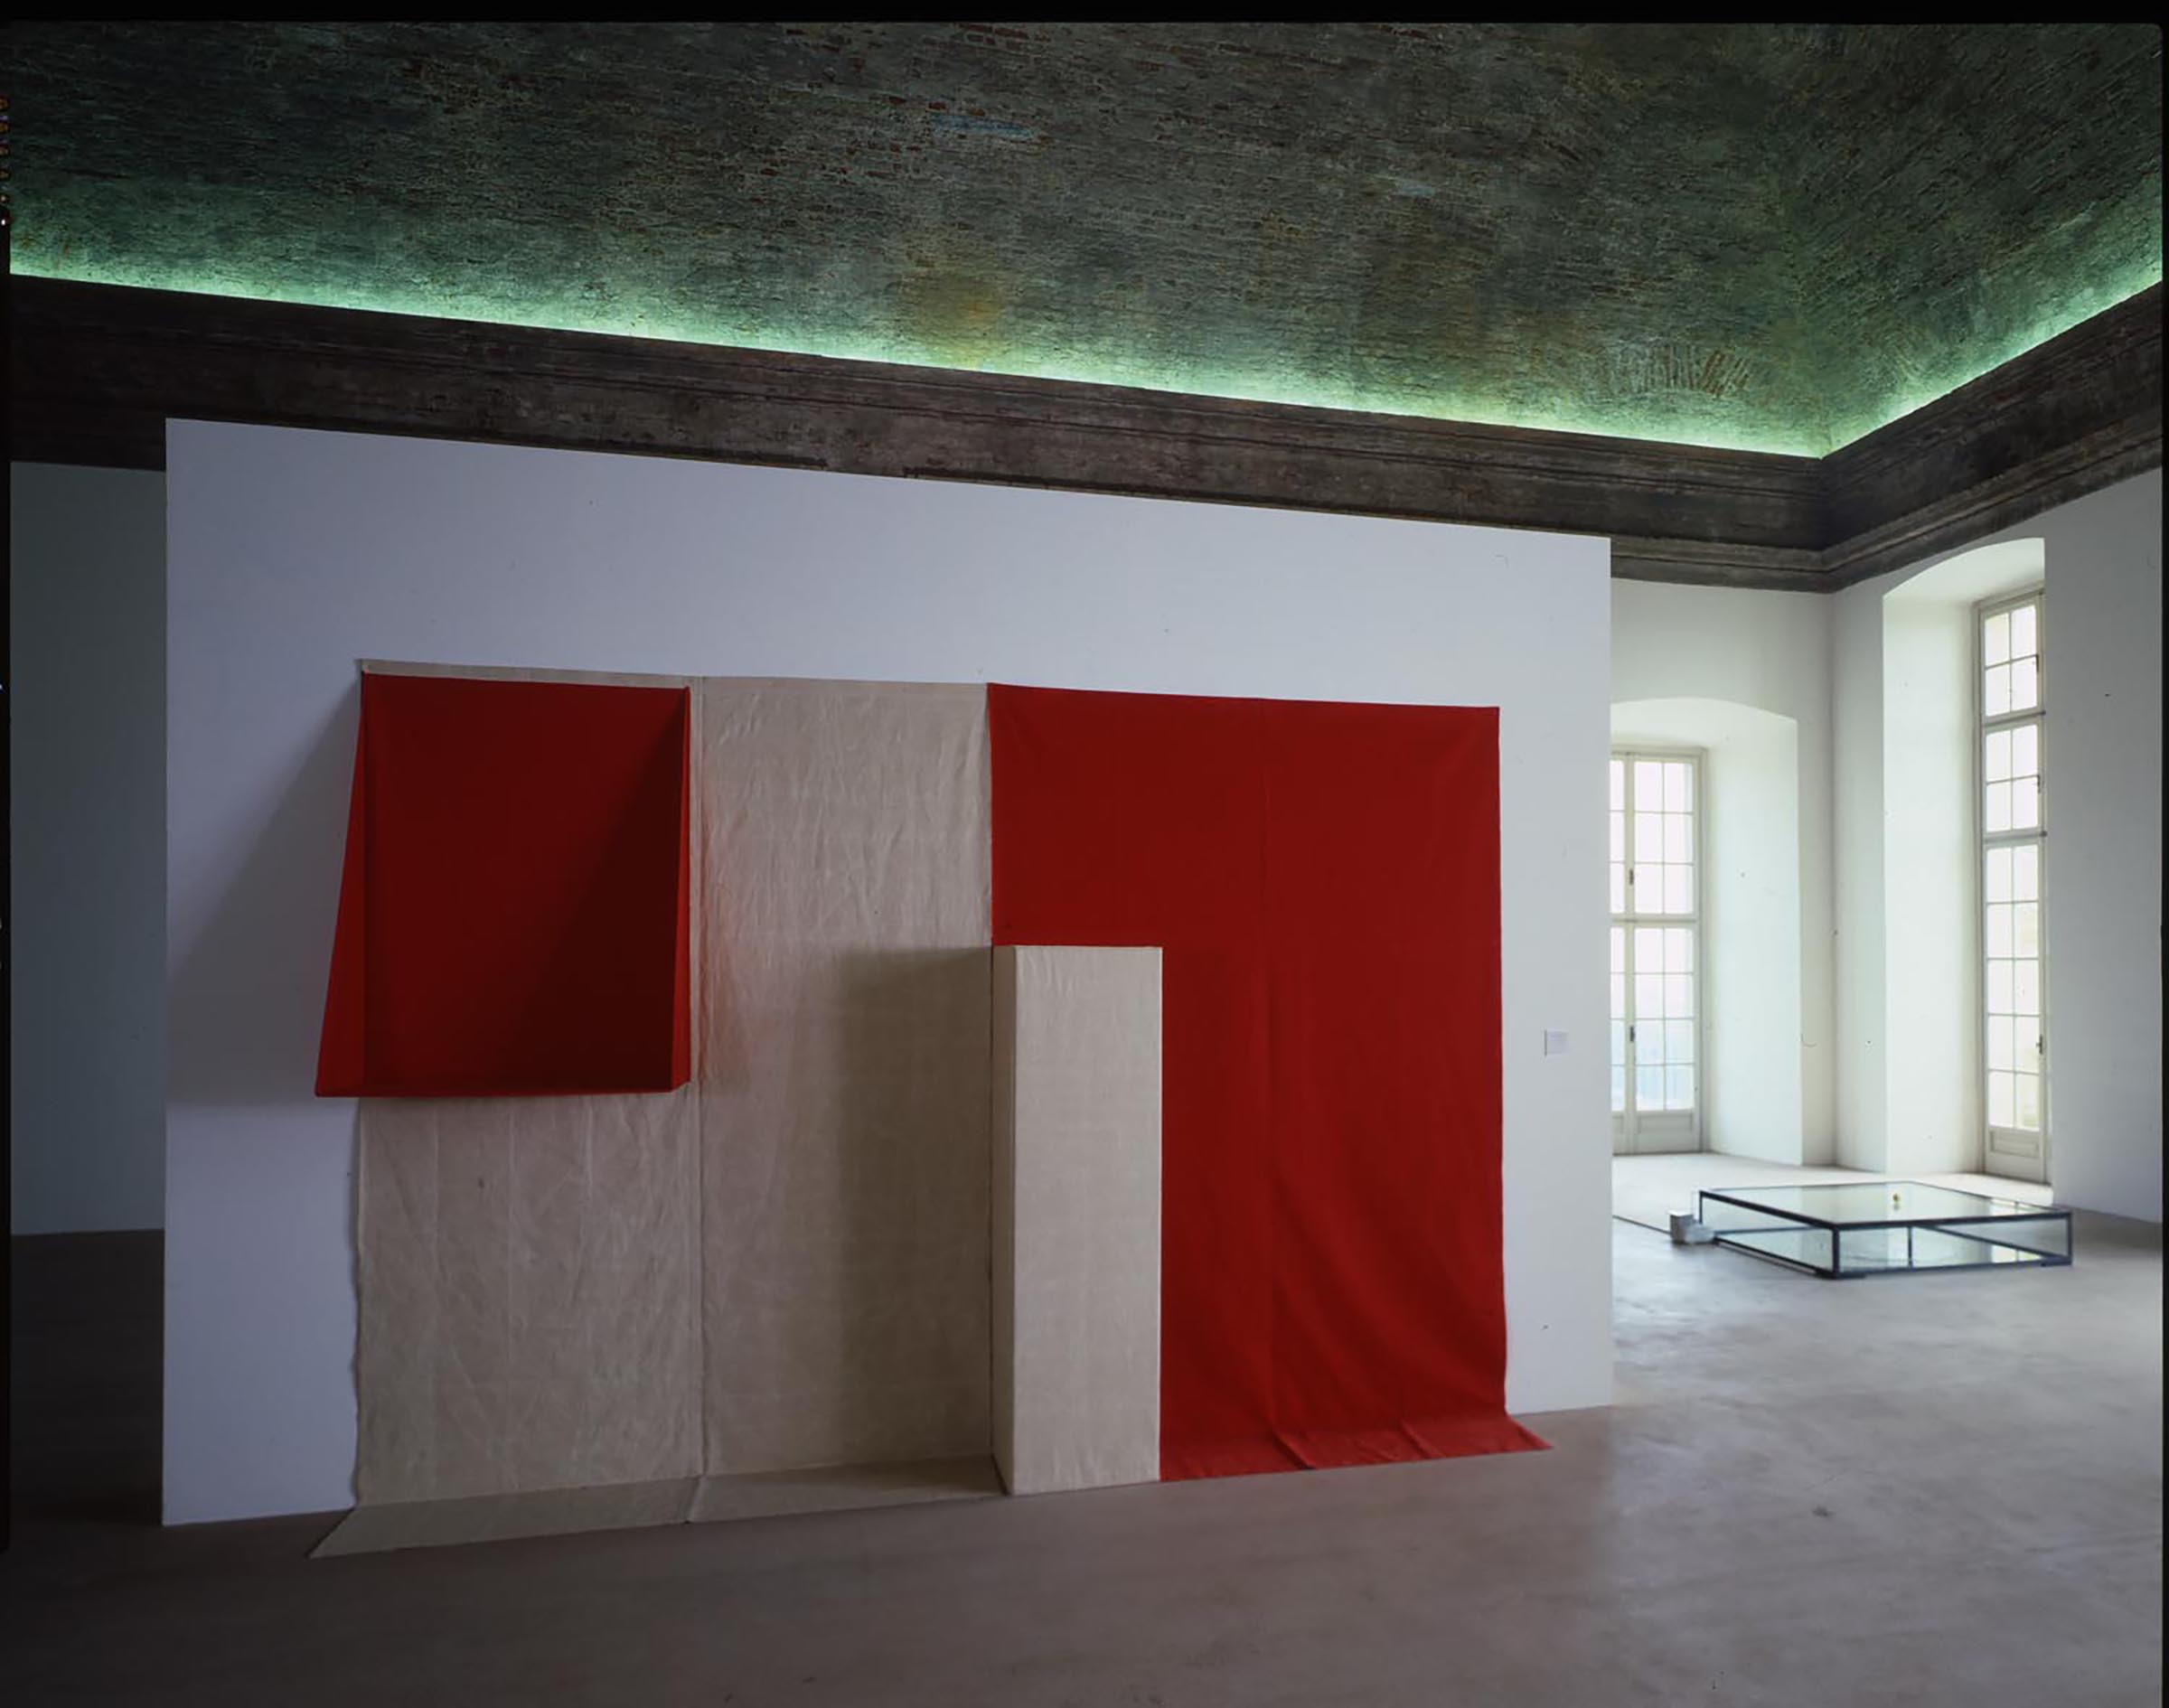 Franz Erhard Walther, Rot, sechs Werke, 1982